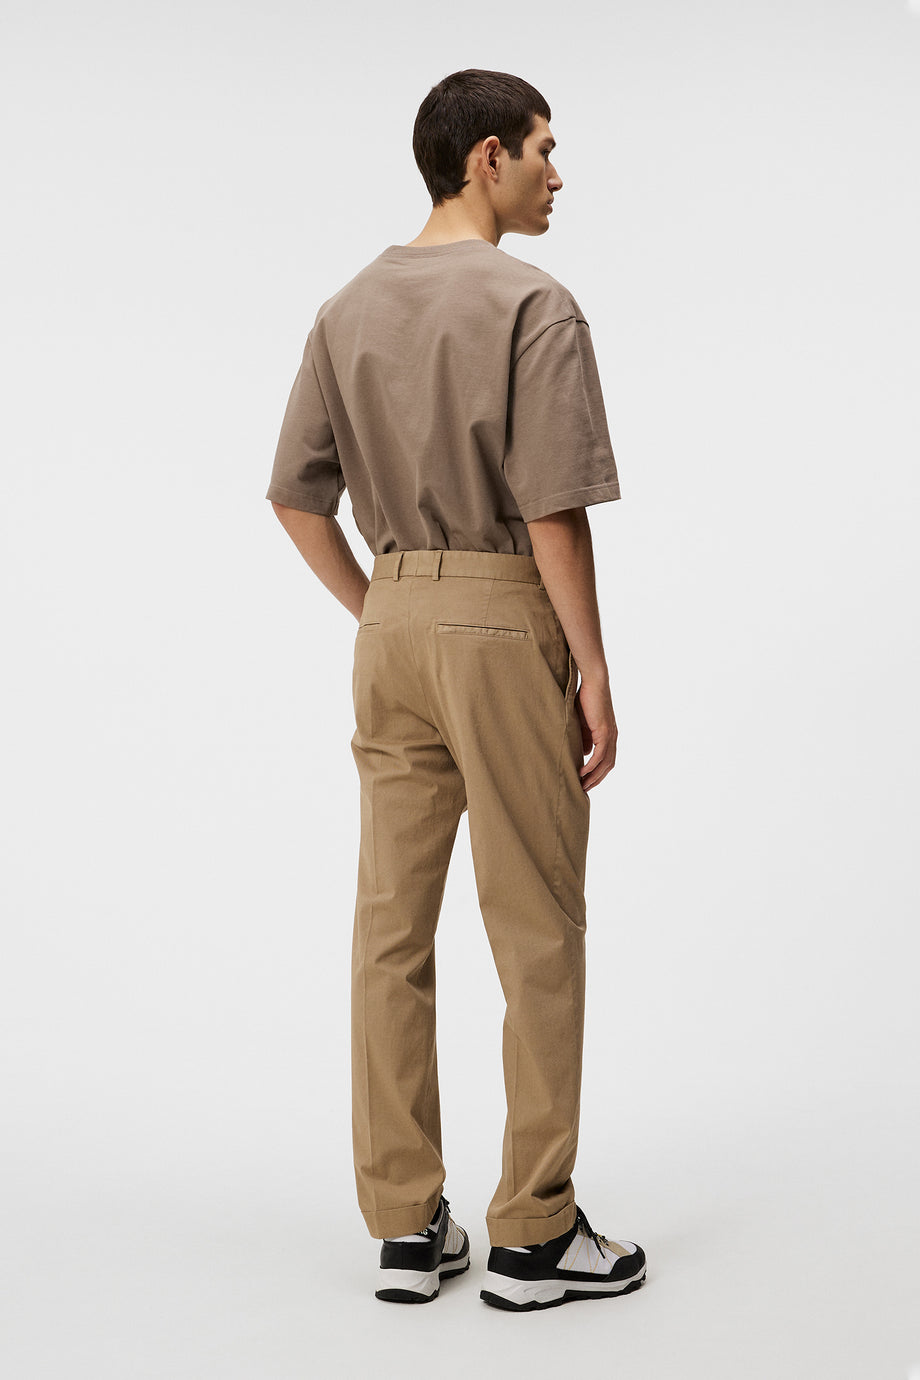 Lois GMT Dyed  Pants / Batique Khaki